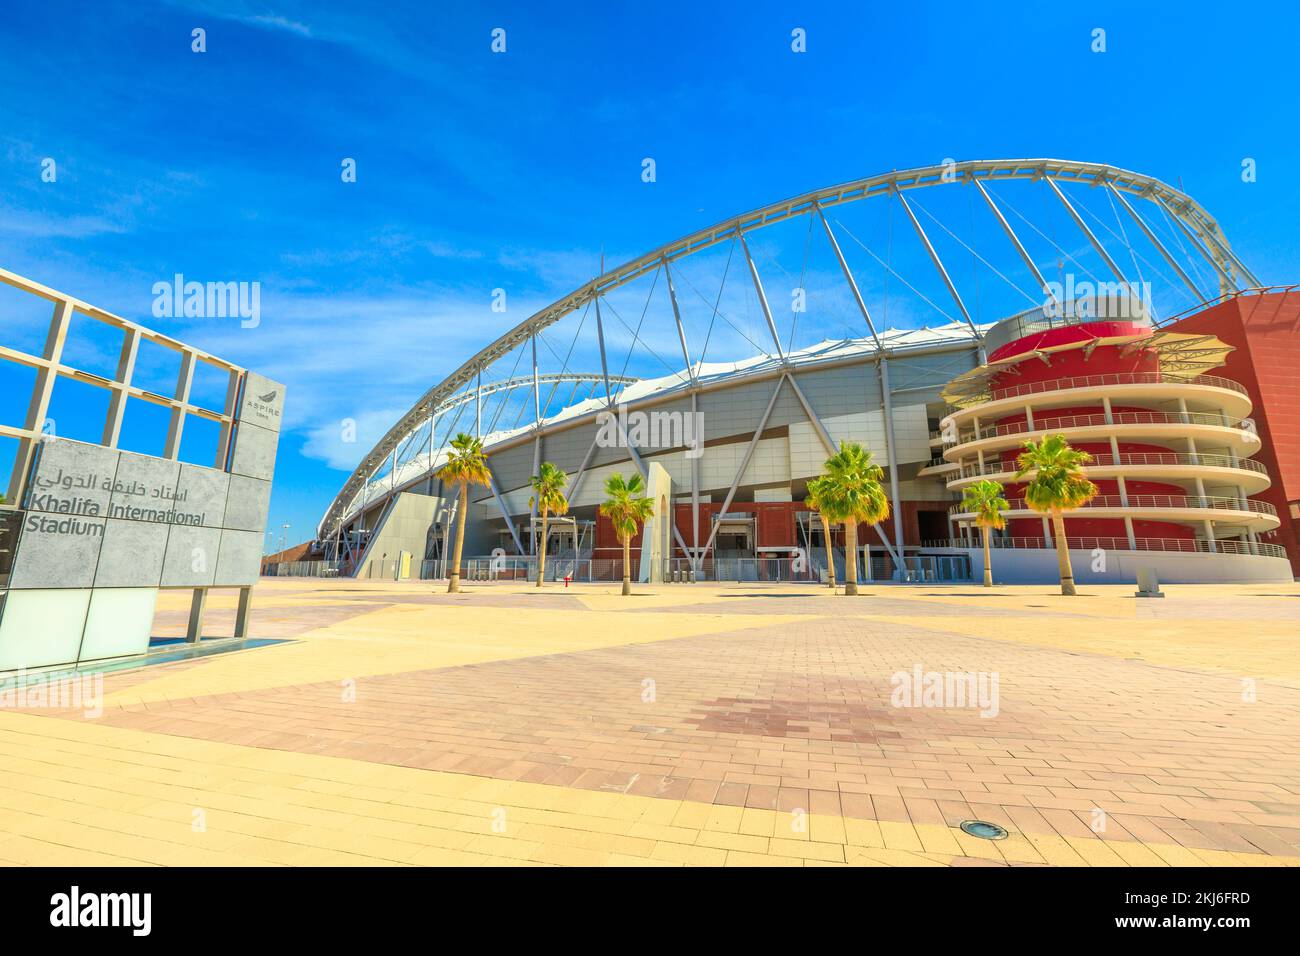 Doha, Katar - 21. Februar 2019: Das Khalifa-Nationalstadion, fertiggestellt und renoviert, komplett mit Klimaanlage bedeckt, ist das Hauptstadion von Katar Stockfoto